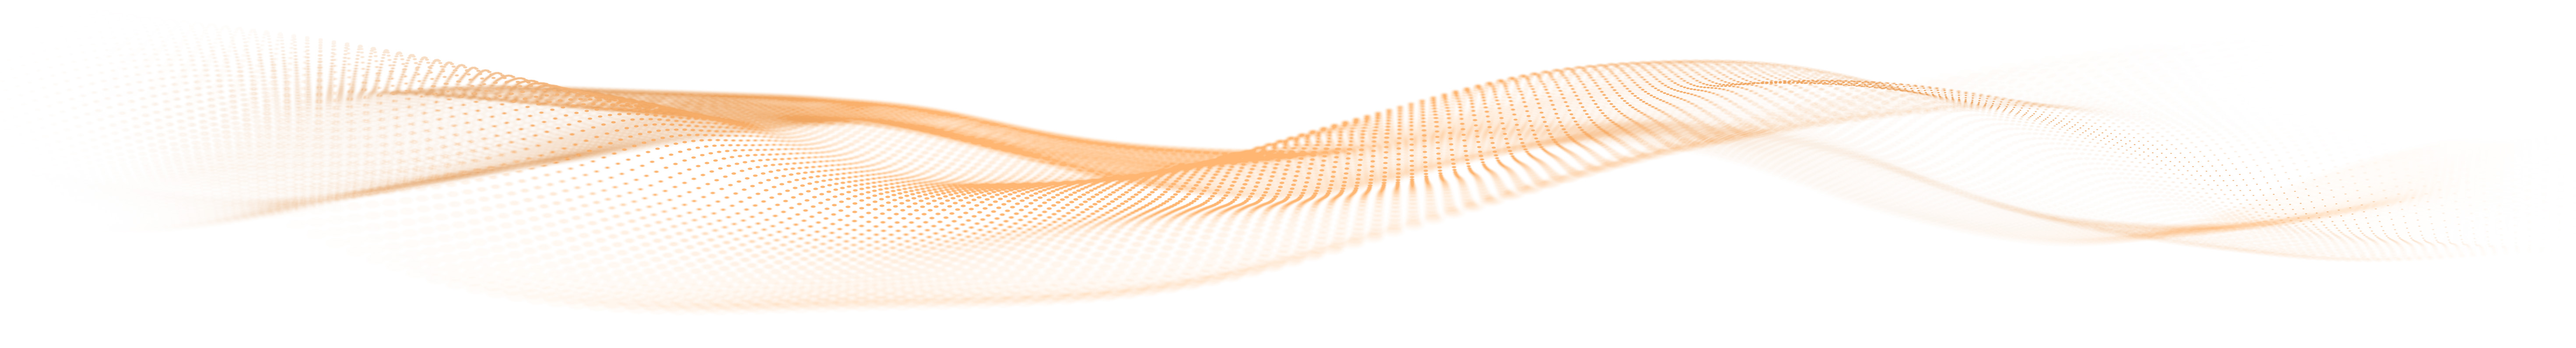 Darstellung einer Welle aus orangen Partikeln